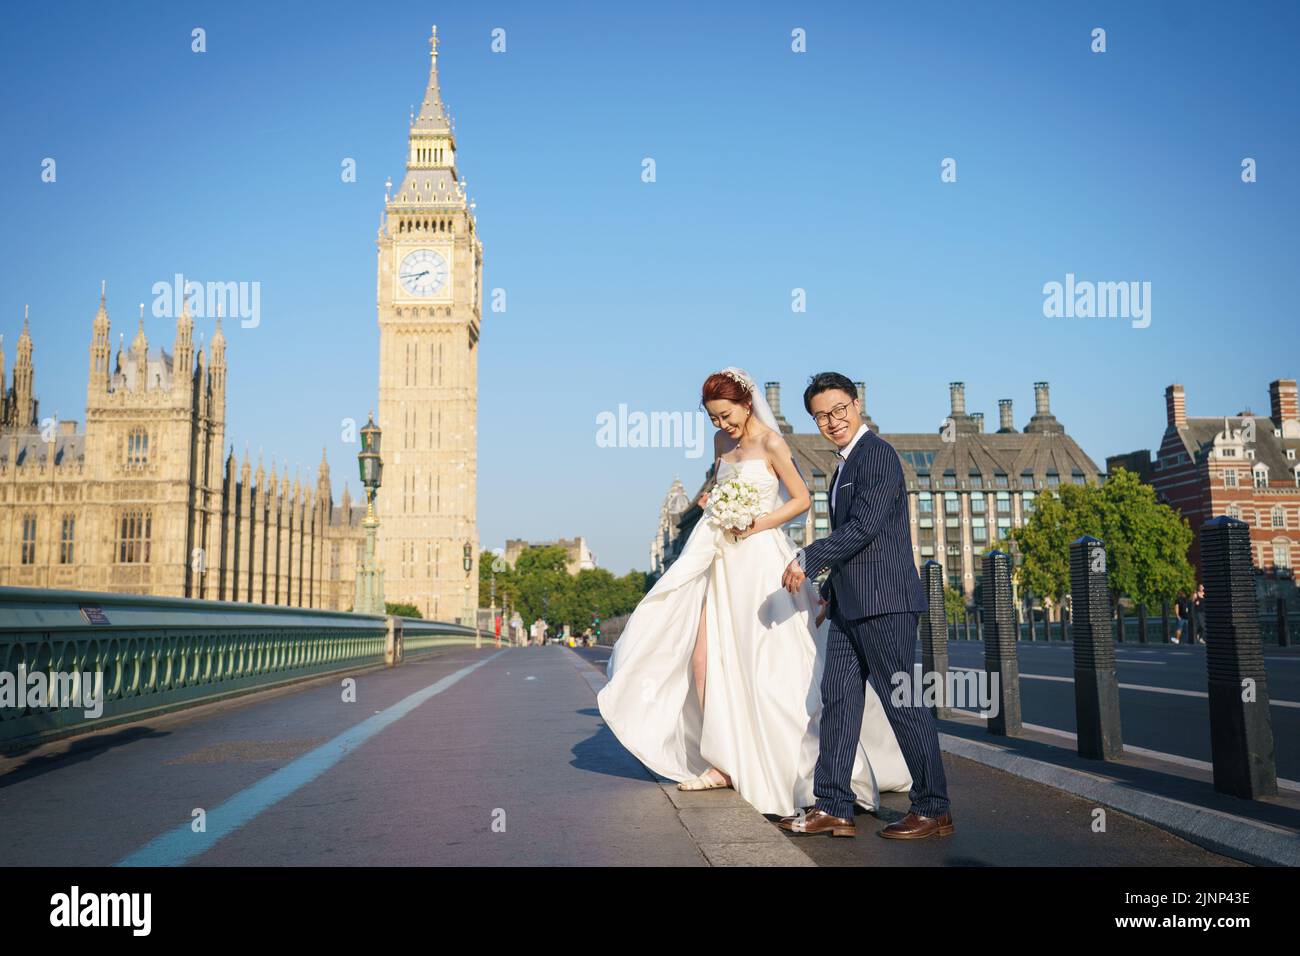 Un couple pose pour des portraits de mariage tôt le matin sur le pont de Westminster, Londres, comme une sécheresse a été déclarée pour certaines parties de l'Angleterre après l'été le plus sec depuis 50 ans. Date de la photo: Samedi 13 août 2022. Banque D'Images